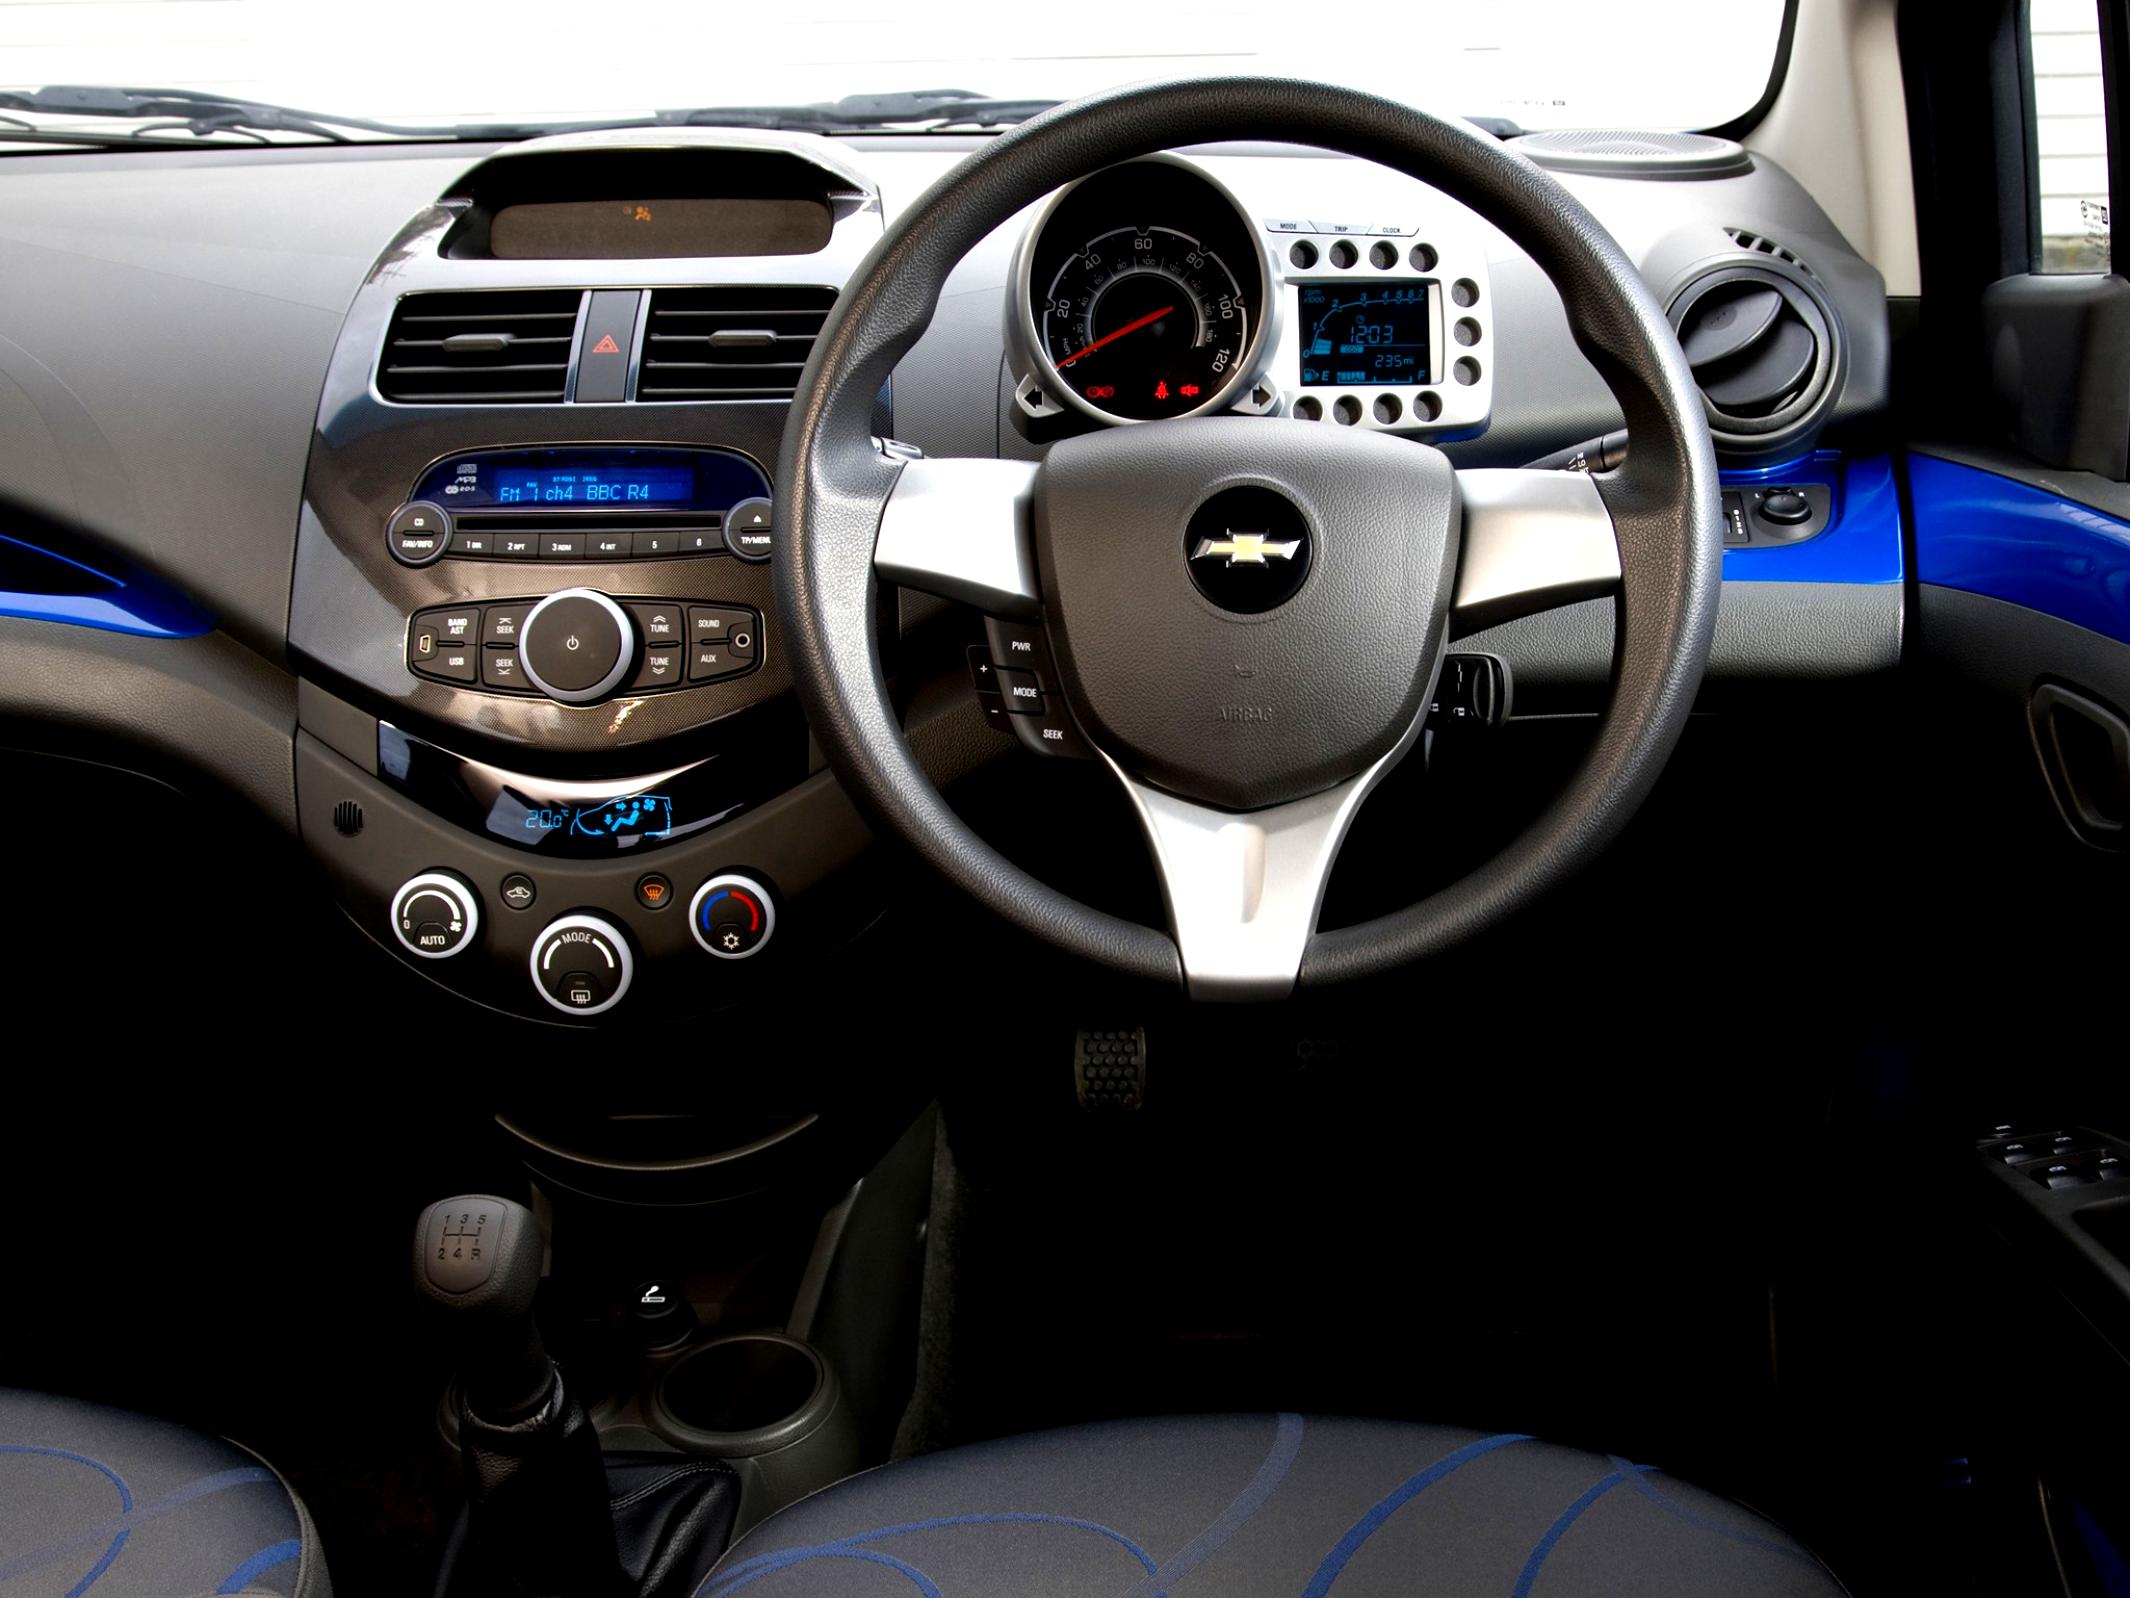 Chevrolet Matiz / Spark M300 2009 #49